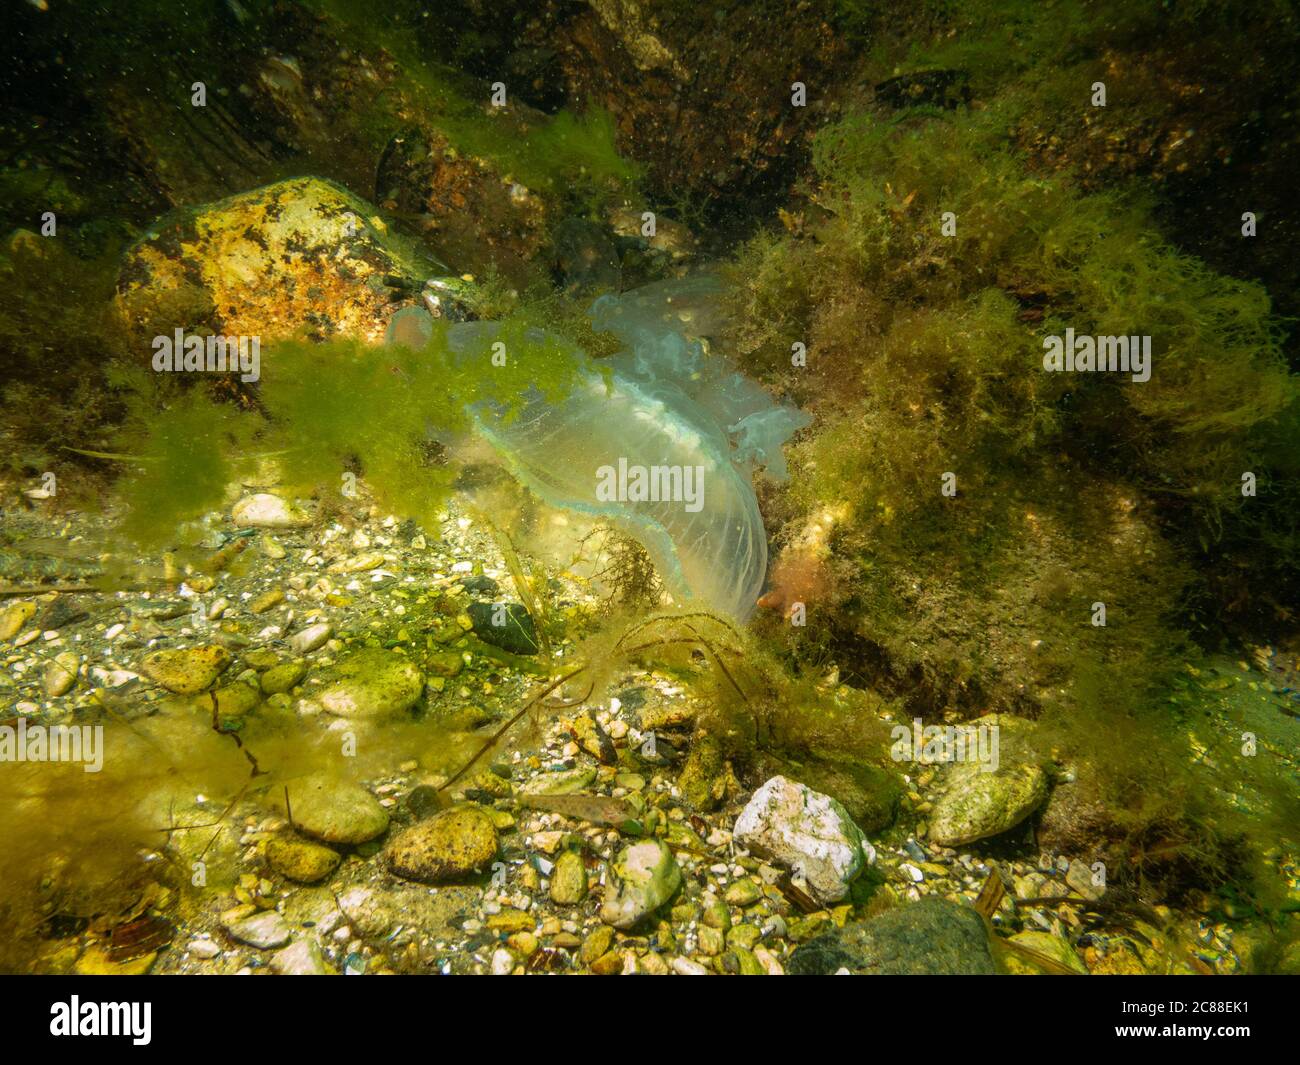 Un medusa appare in un bel mare sottomarino. Acqua verde fredda e alghe gialle. Foto di Oresund, Malmo, nel sud della Svezia. Foto Stock